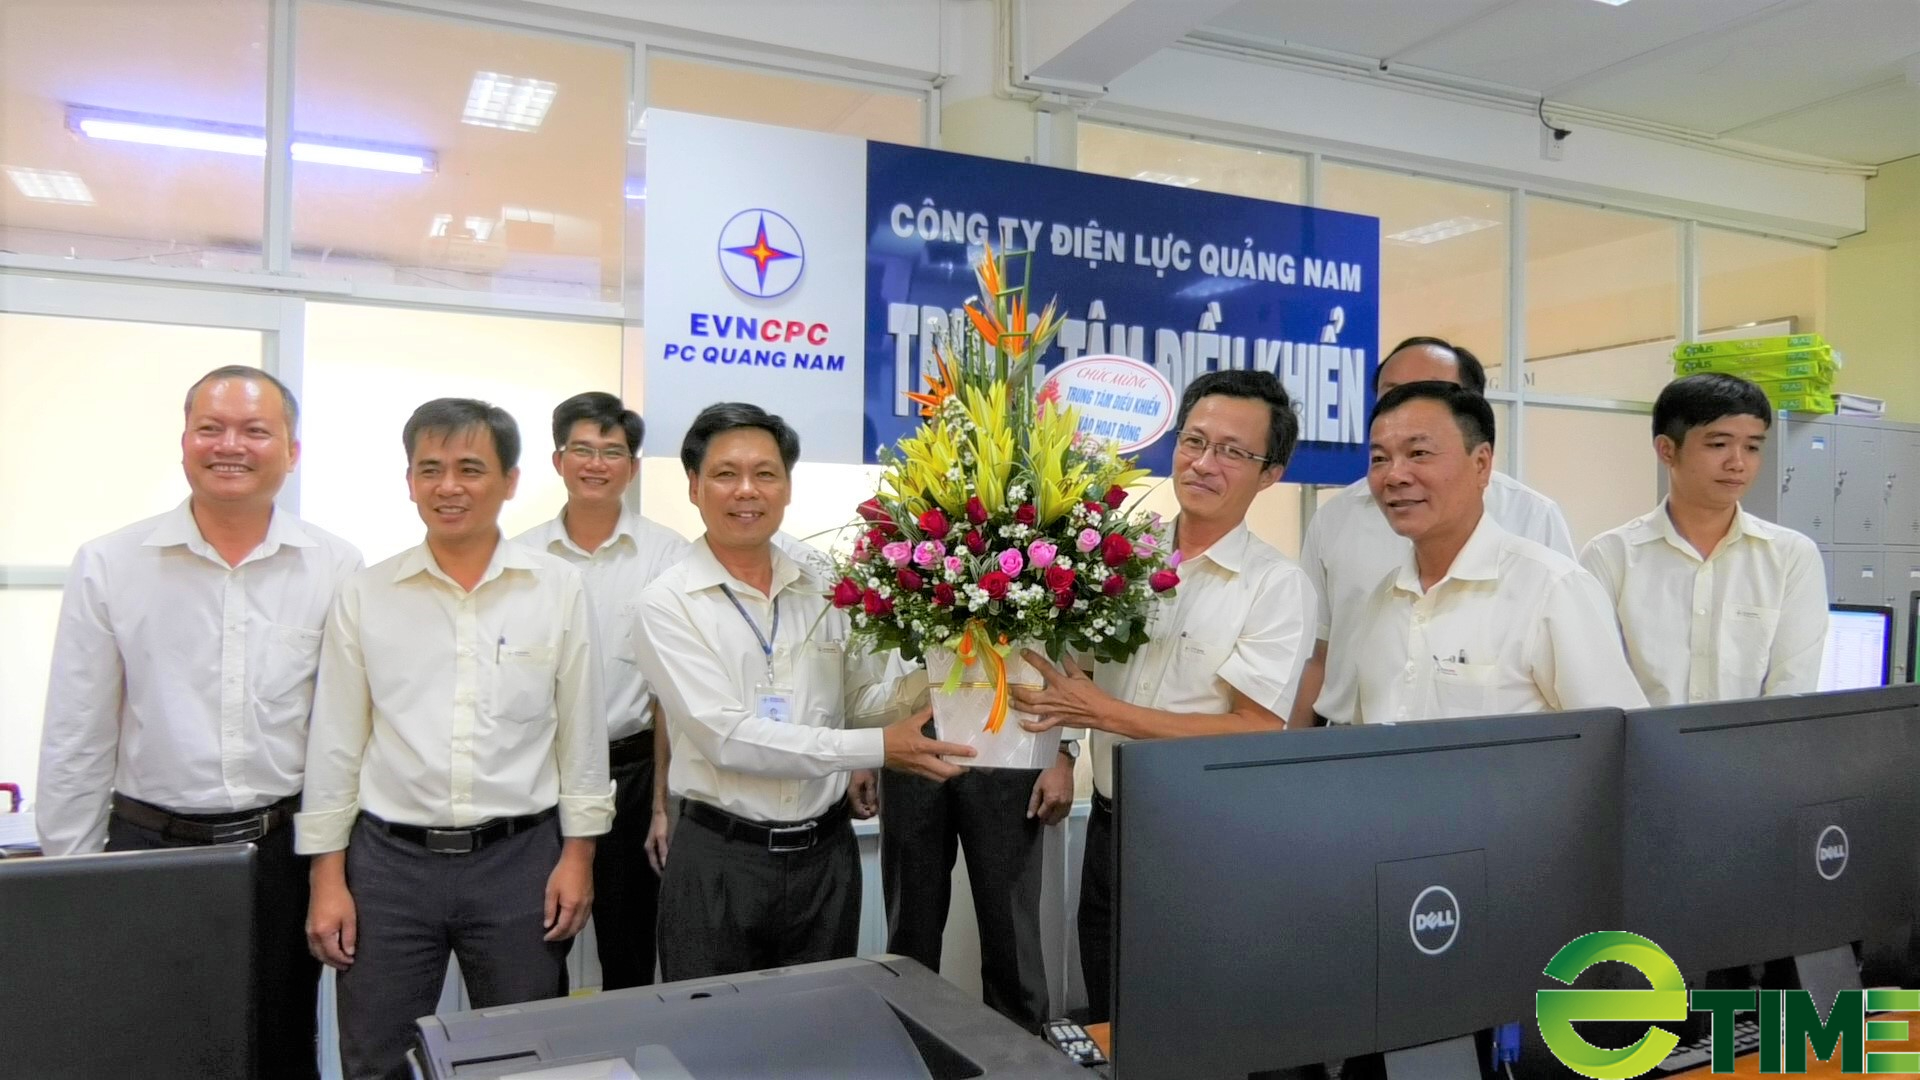 Công ty Điện lực Quảng Nam, chặng đường 25 năm thắp sáng niềm tin - Ảnh 5.